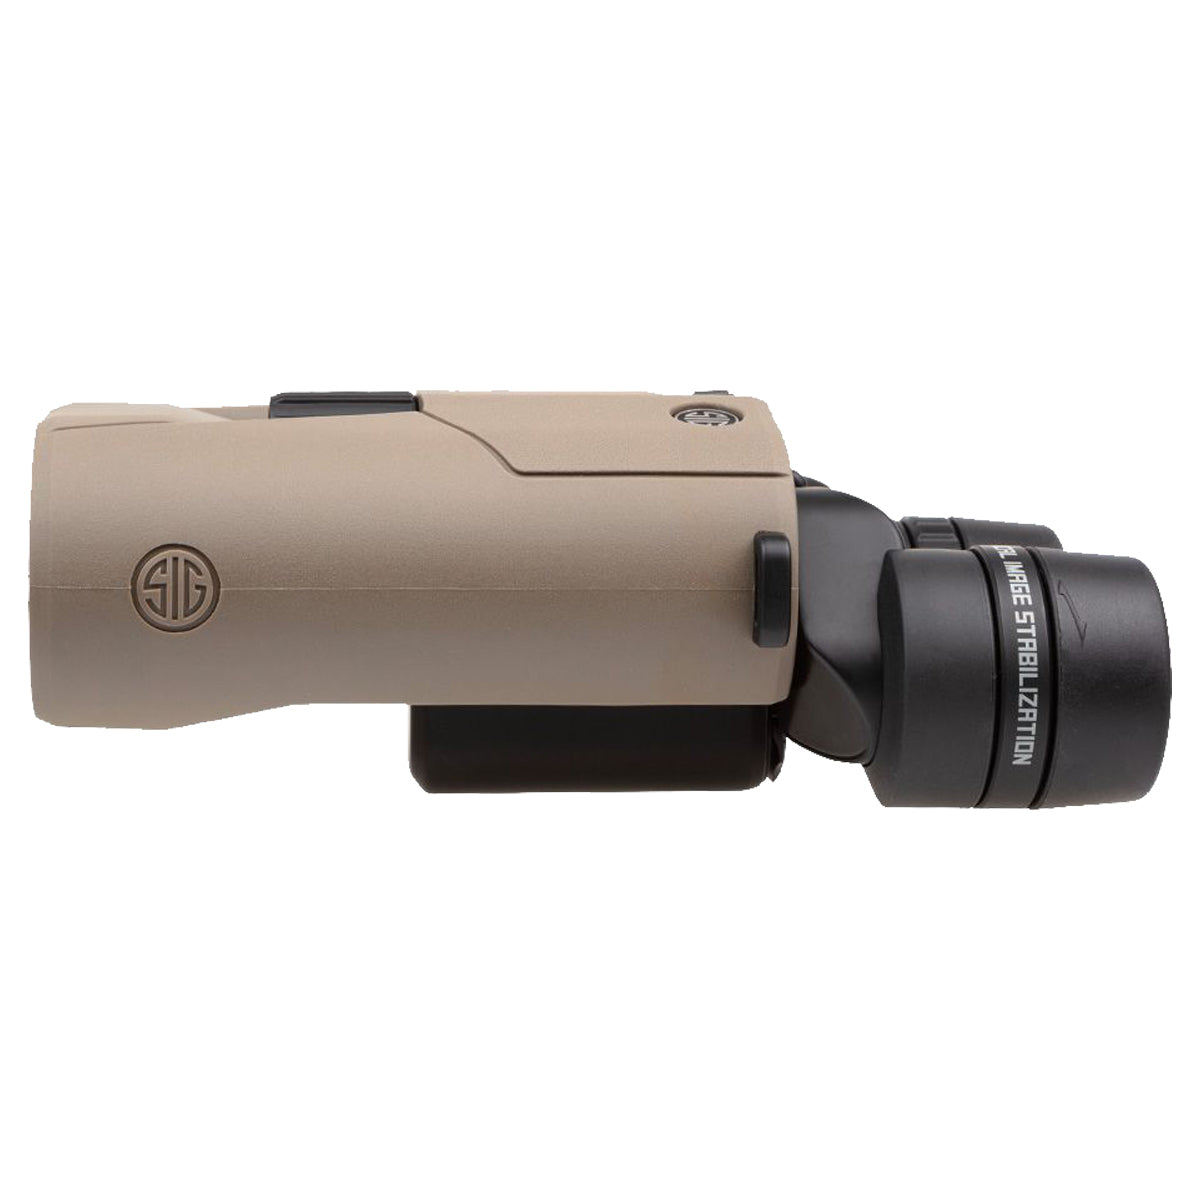 Sig Sauer ZULU6 HDX 20x42mm Image Stabilized Binocular in  by GOHUNT | Sig Sauer - GOHUNT Shop